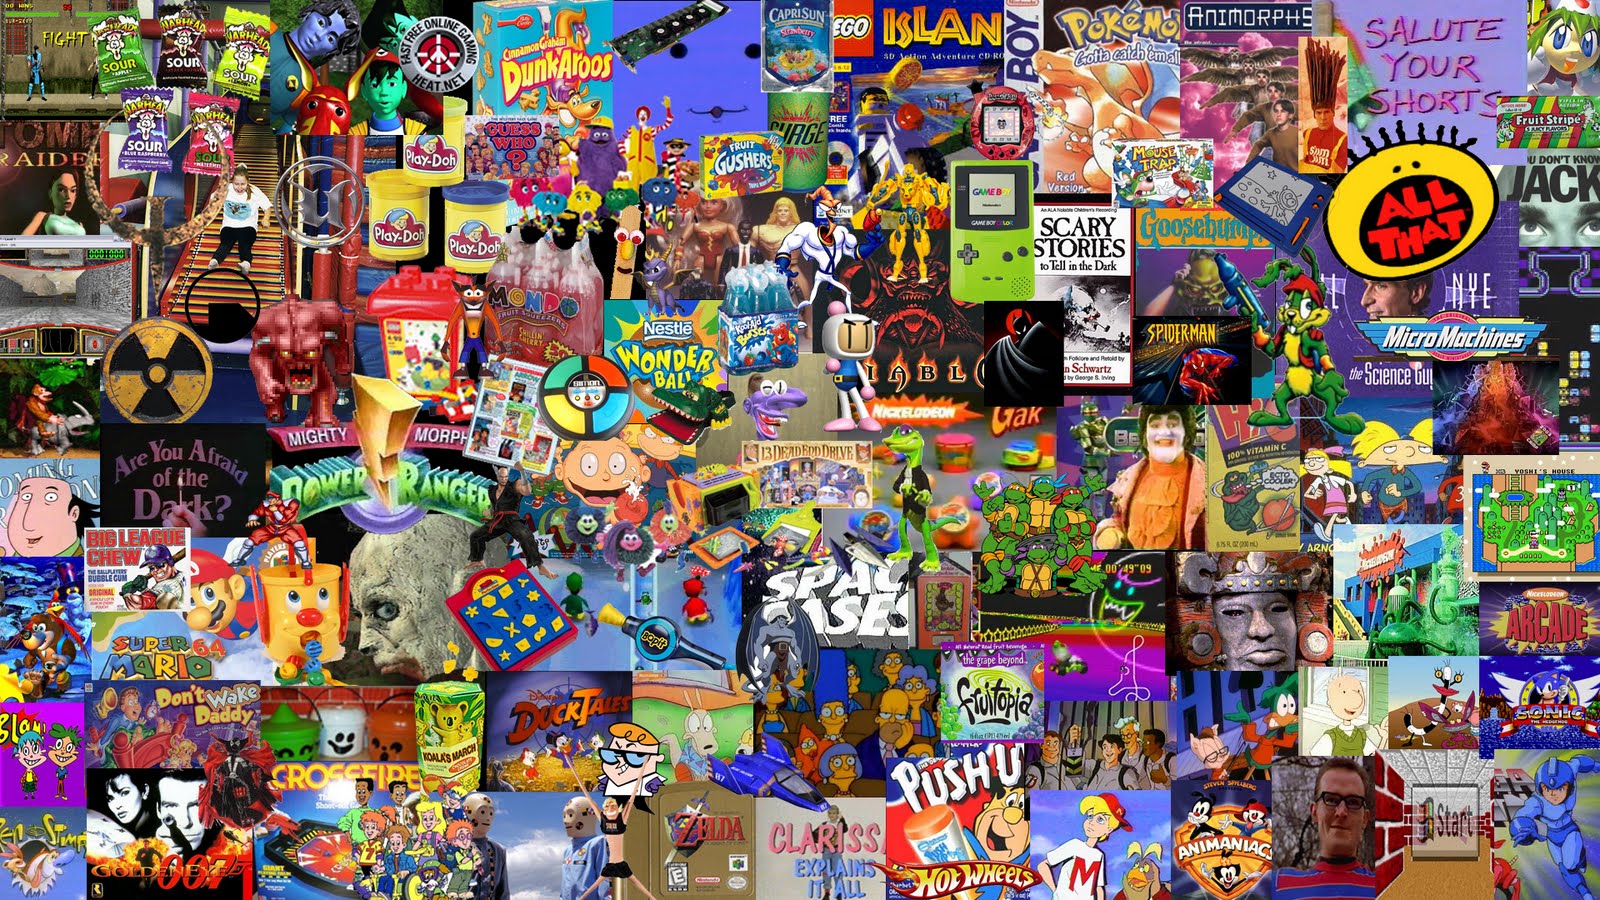 Hình nền máy tính 90s: Hình nền máy tính 90s sẽ khiến bạn cảm thấy như đang sử dụng máy tính của thập niên trước. Với các màu sắc sặc sỡ, phông chữ đậm và các biểu tượng kinh điển, hình nền này sẽ mang lại cảm giác hoài niệm và lạc quan cho bạn.